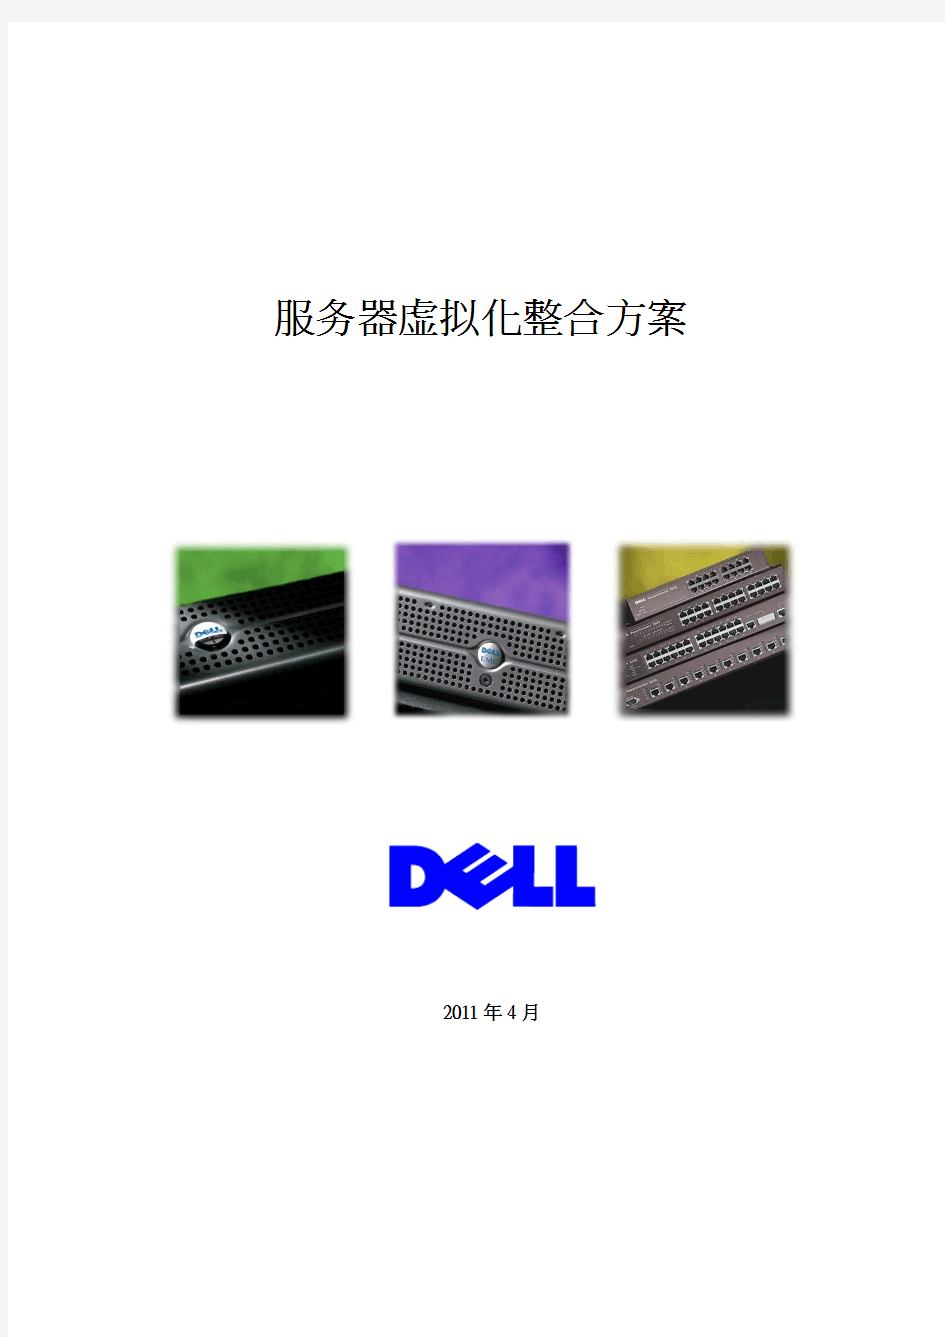 DELL虚拟化服务器整合方案书